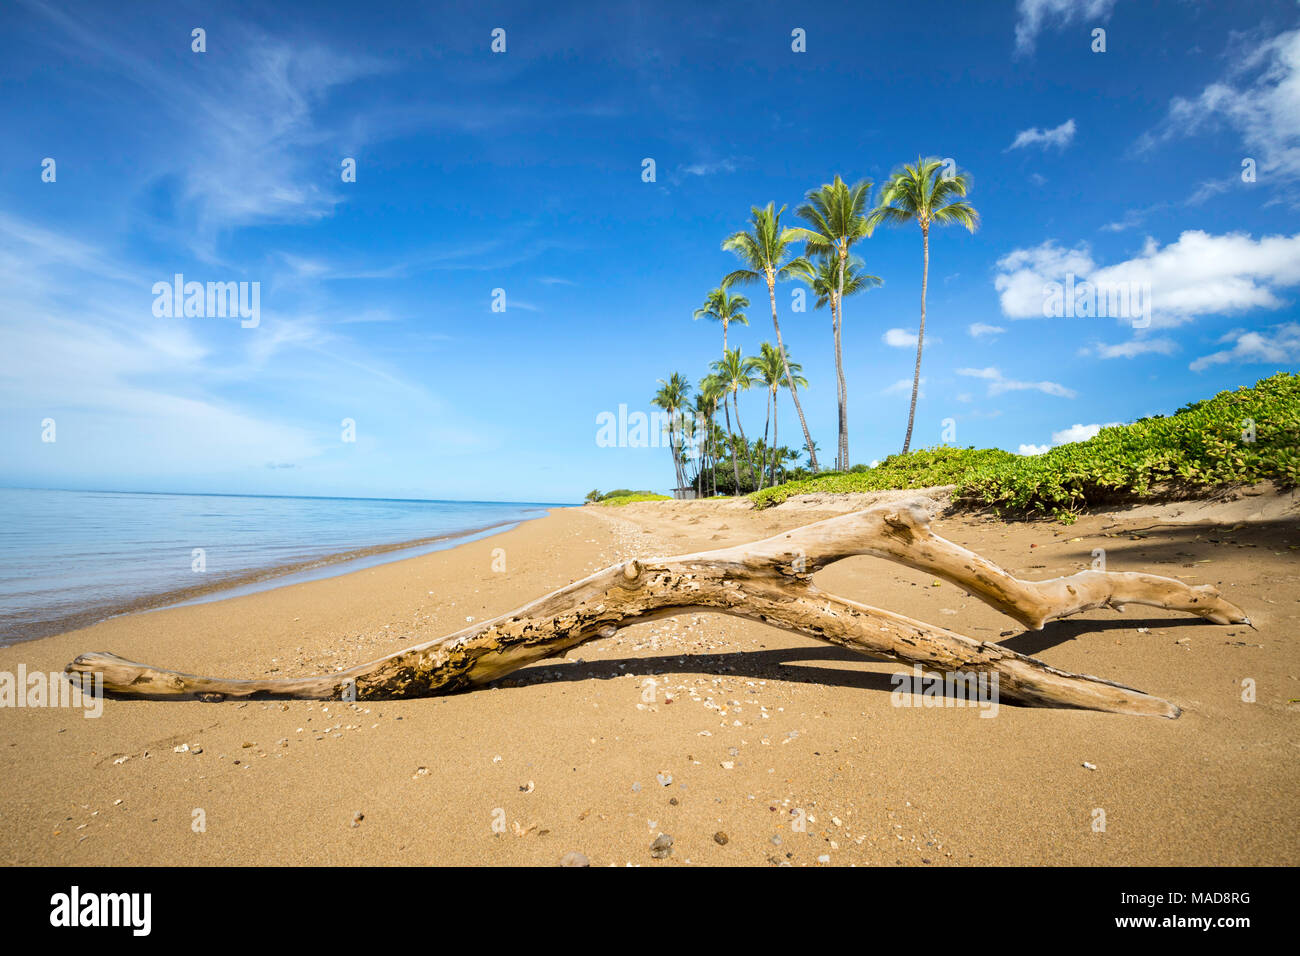 Mit Palmen hinter, ein Stück Treibholz sitzt im Sand auf dem ruhigen Strand bei Kakahaia Beach Park, Insel Molokai, Hawaii, Vereinigte Staaten von Am Stockfoto